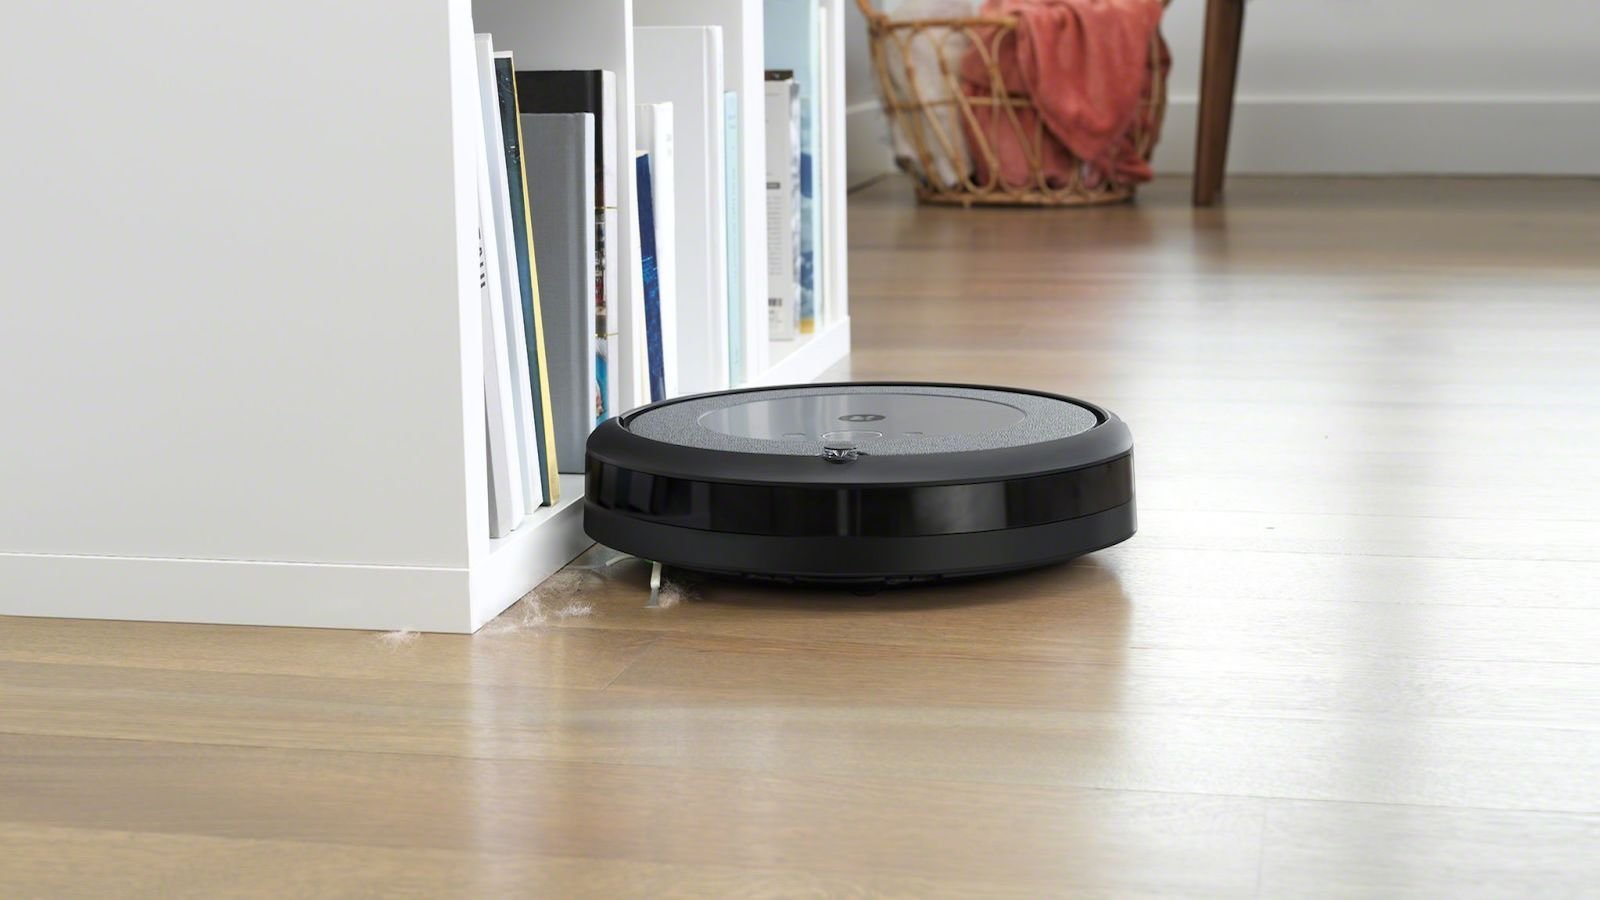 iRobot Roomba i3+ robot vacuum empties debris on its own